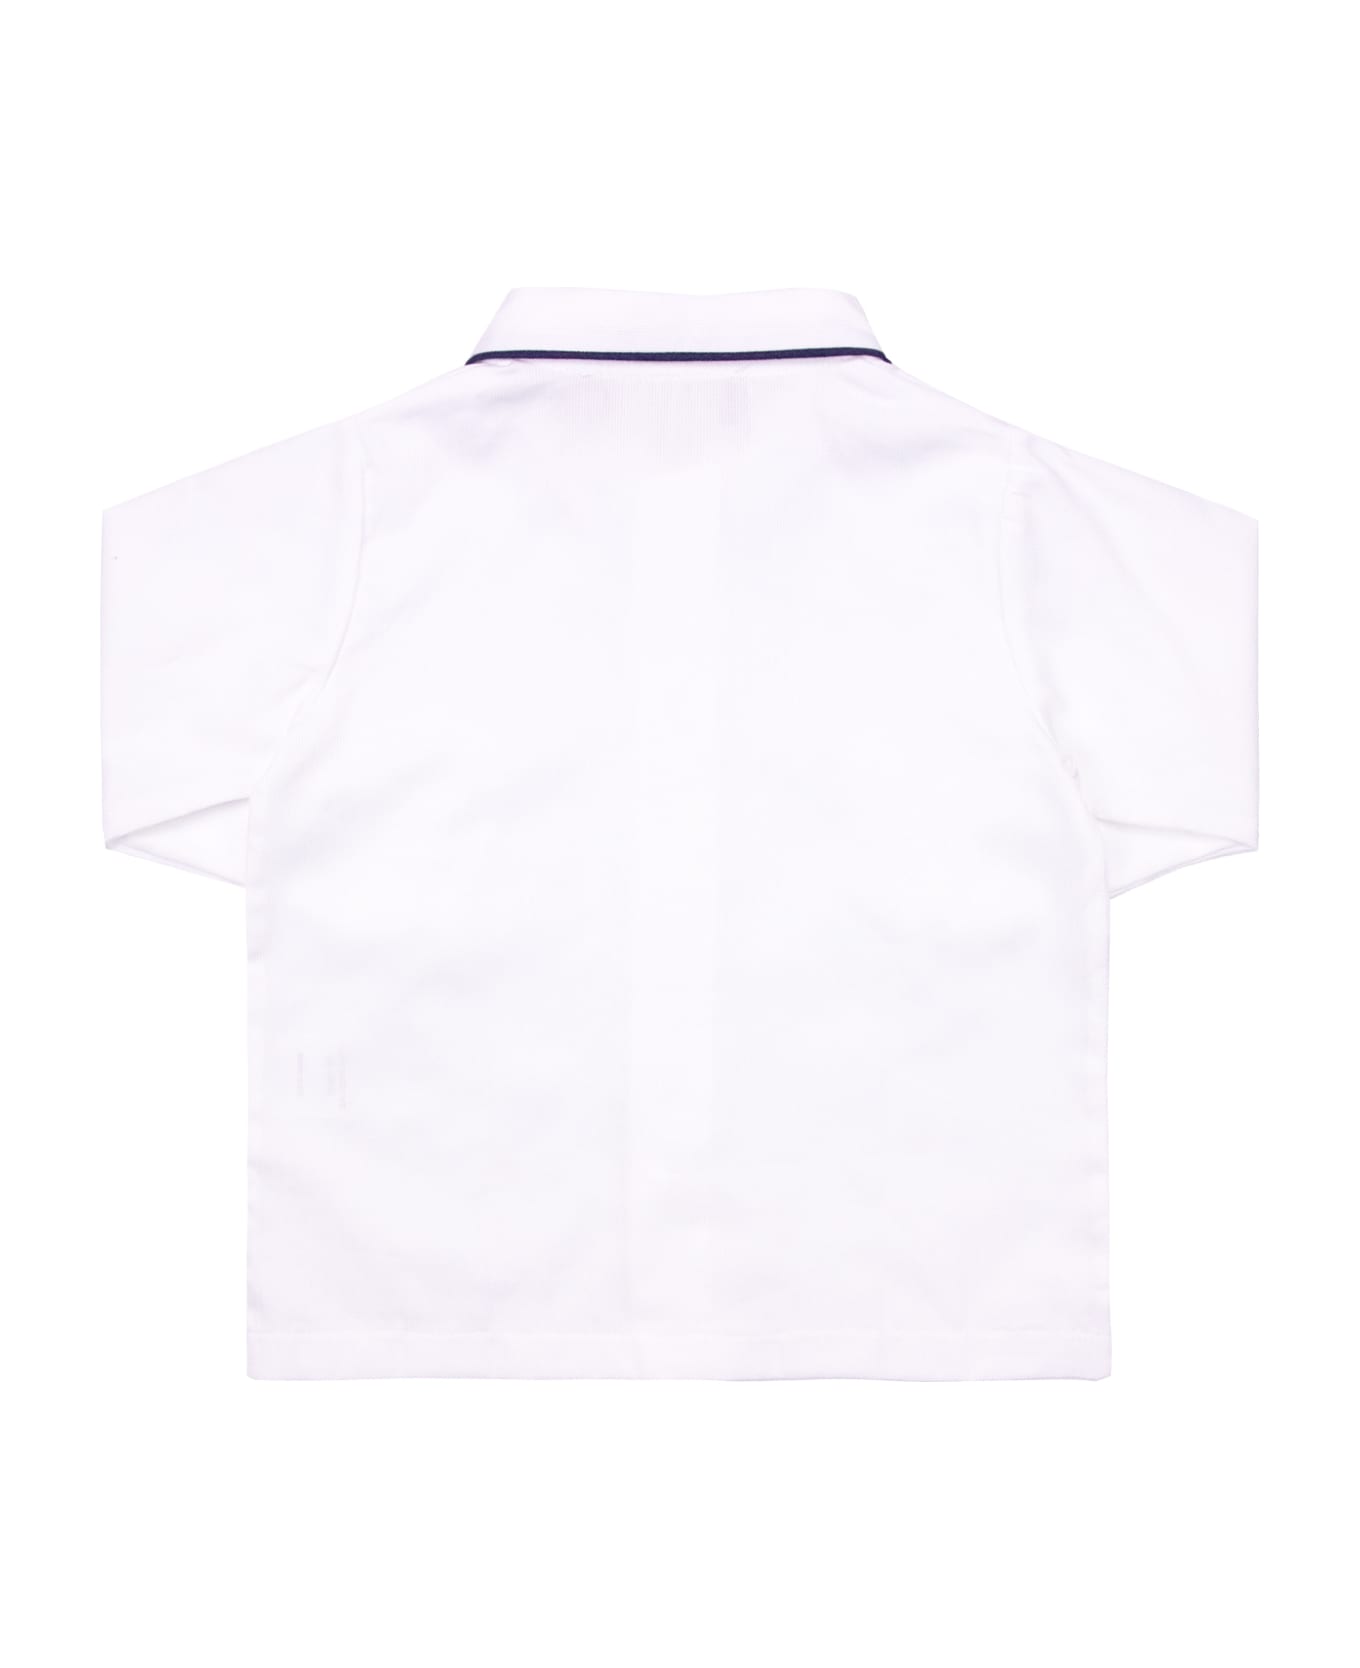 La stupenderia Cotton Shirt - White シャツ